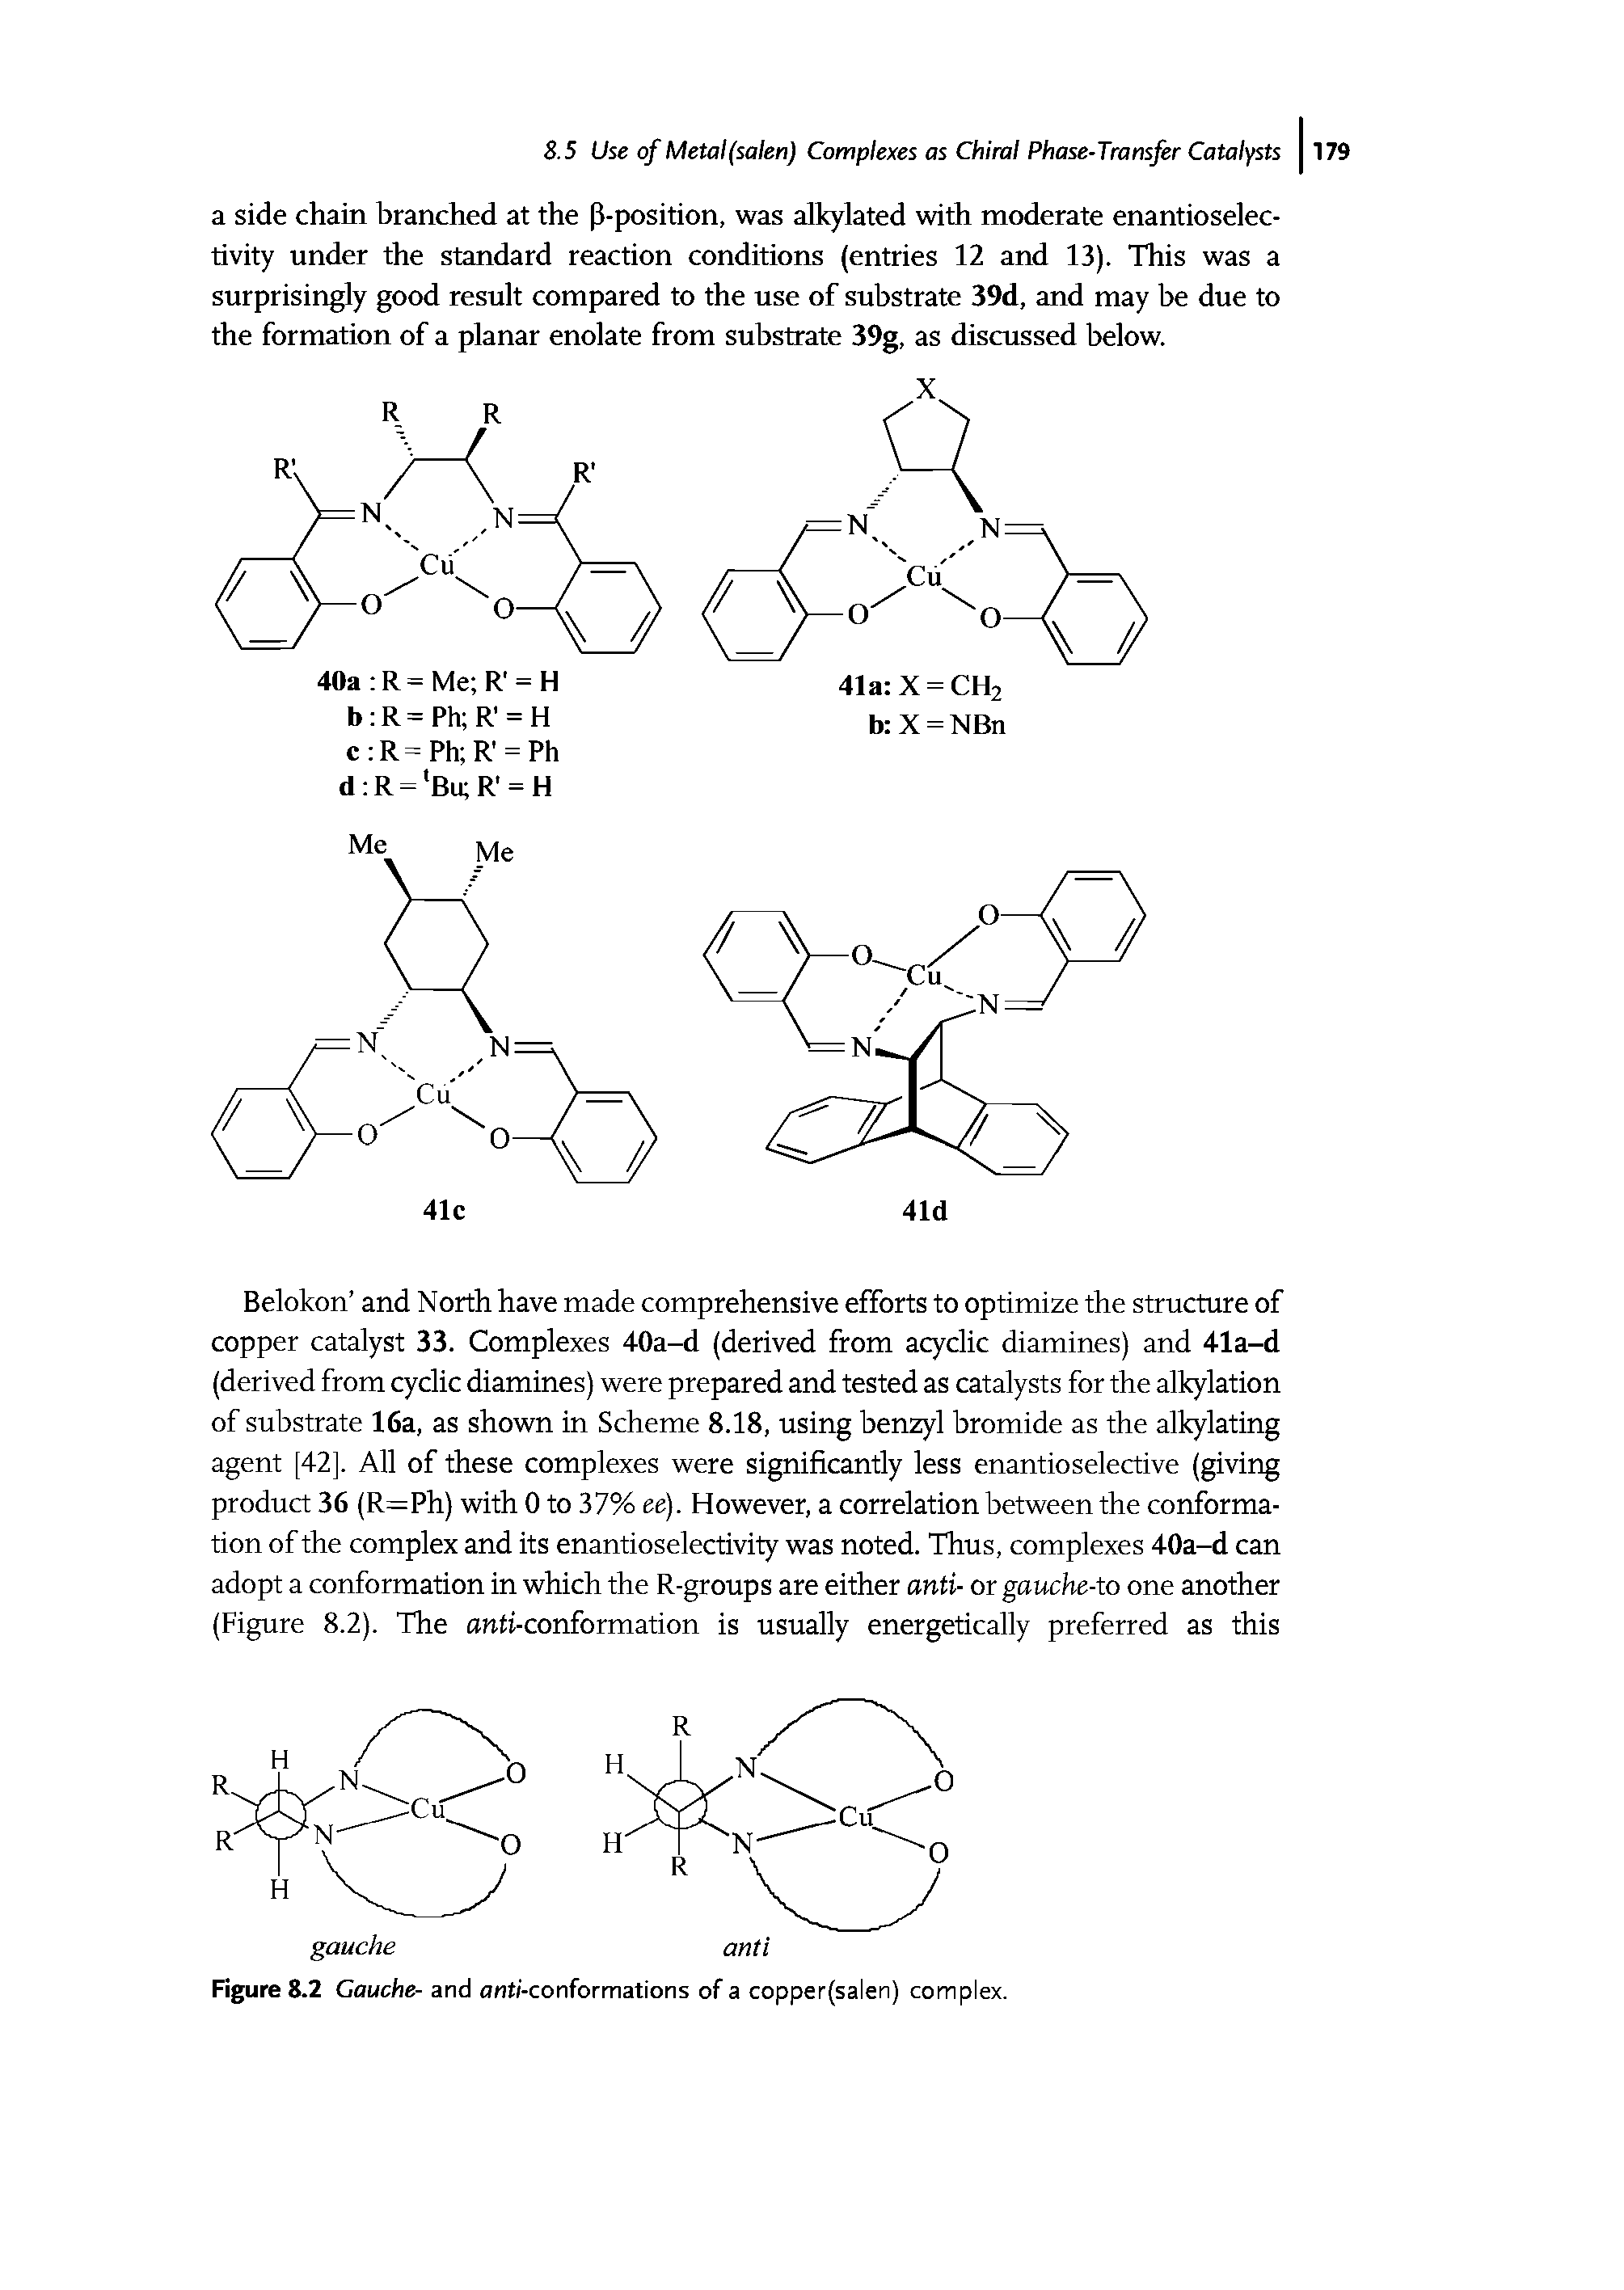 Figure 8.2 Gauche- and anti-conformations of a copper(salen) complex.